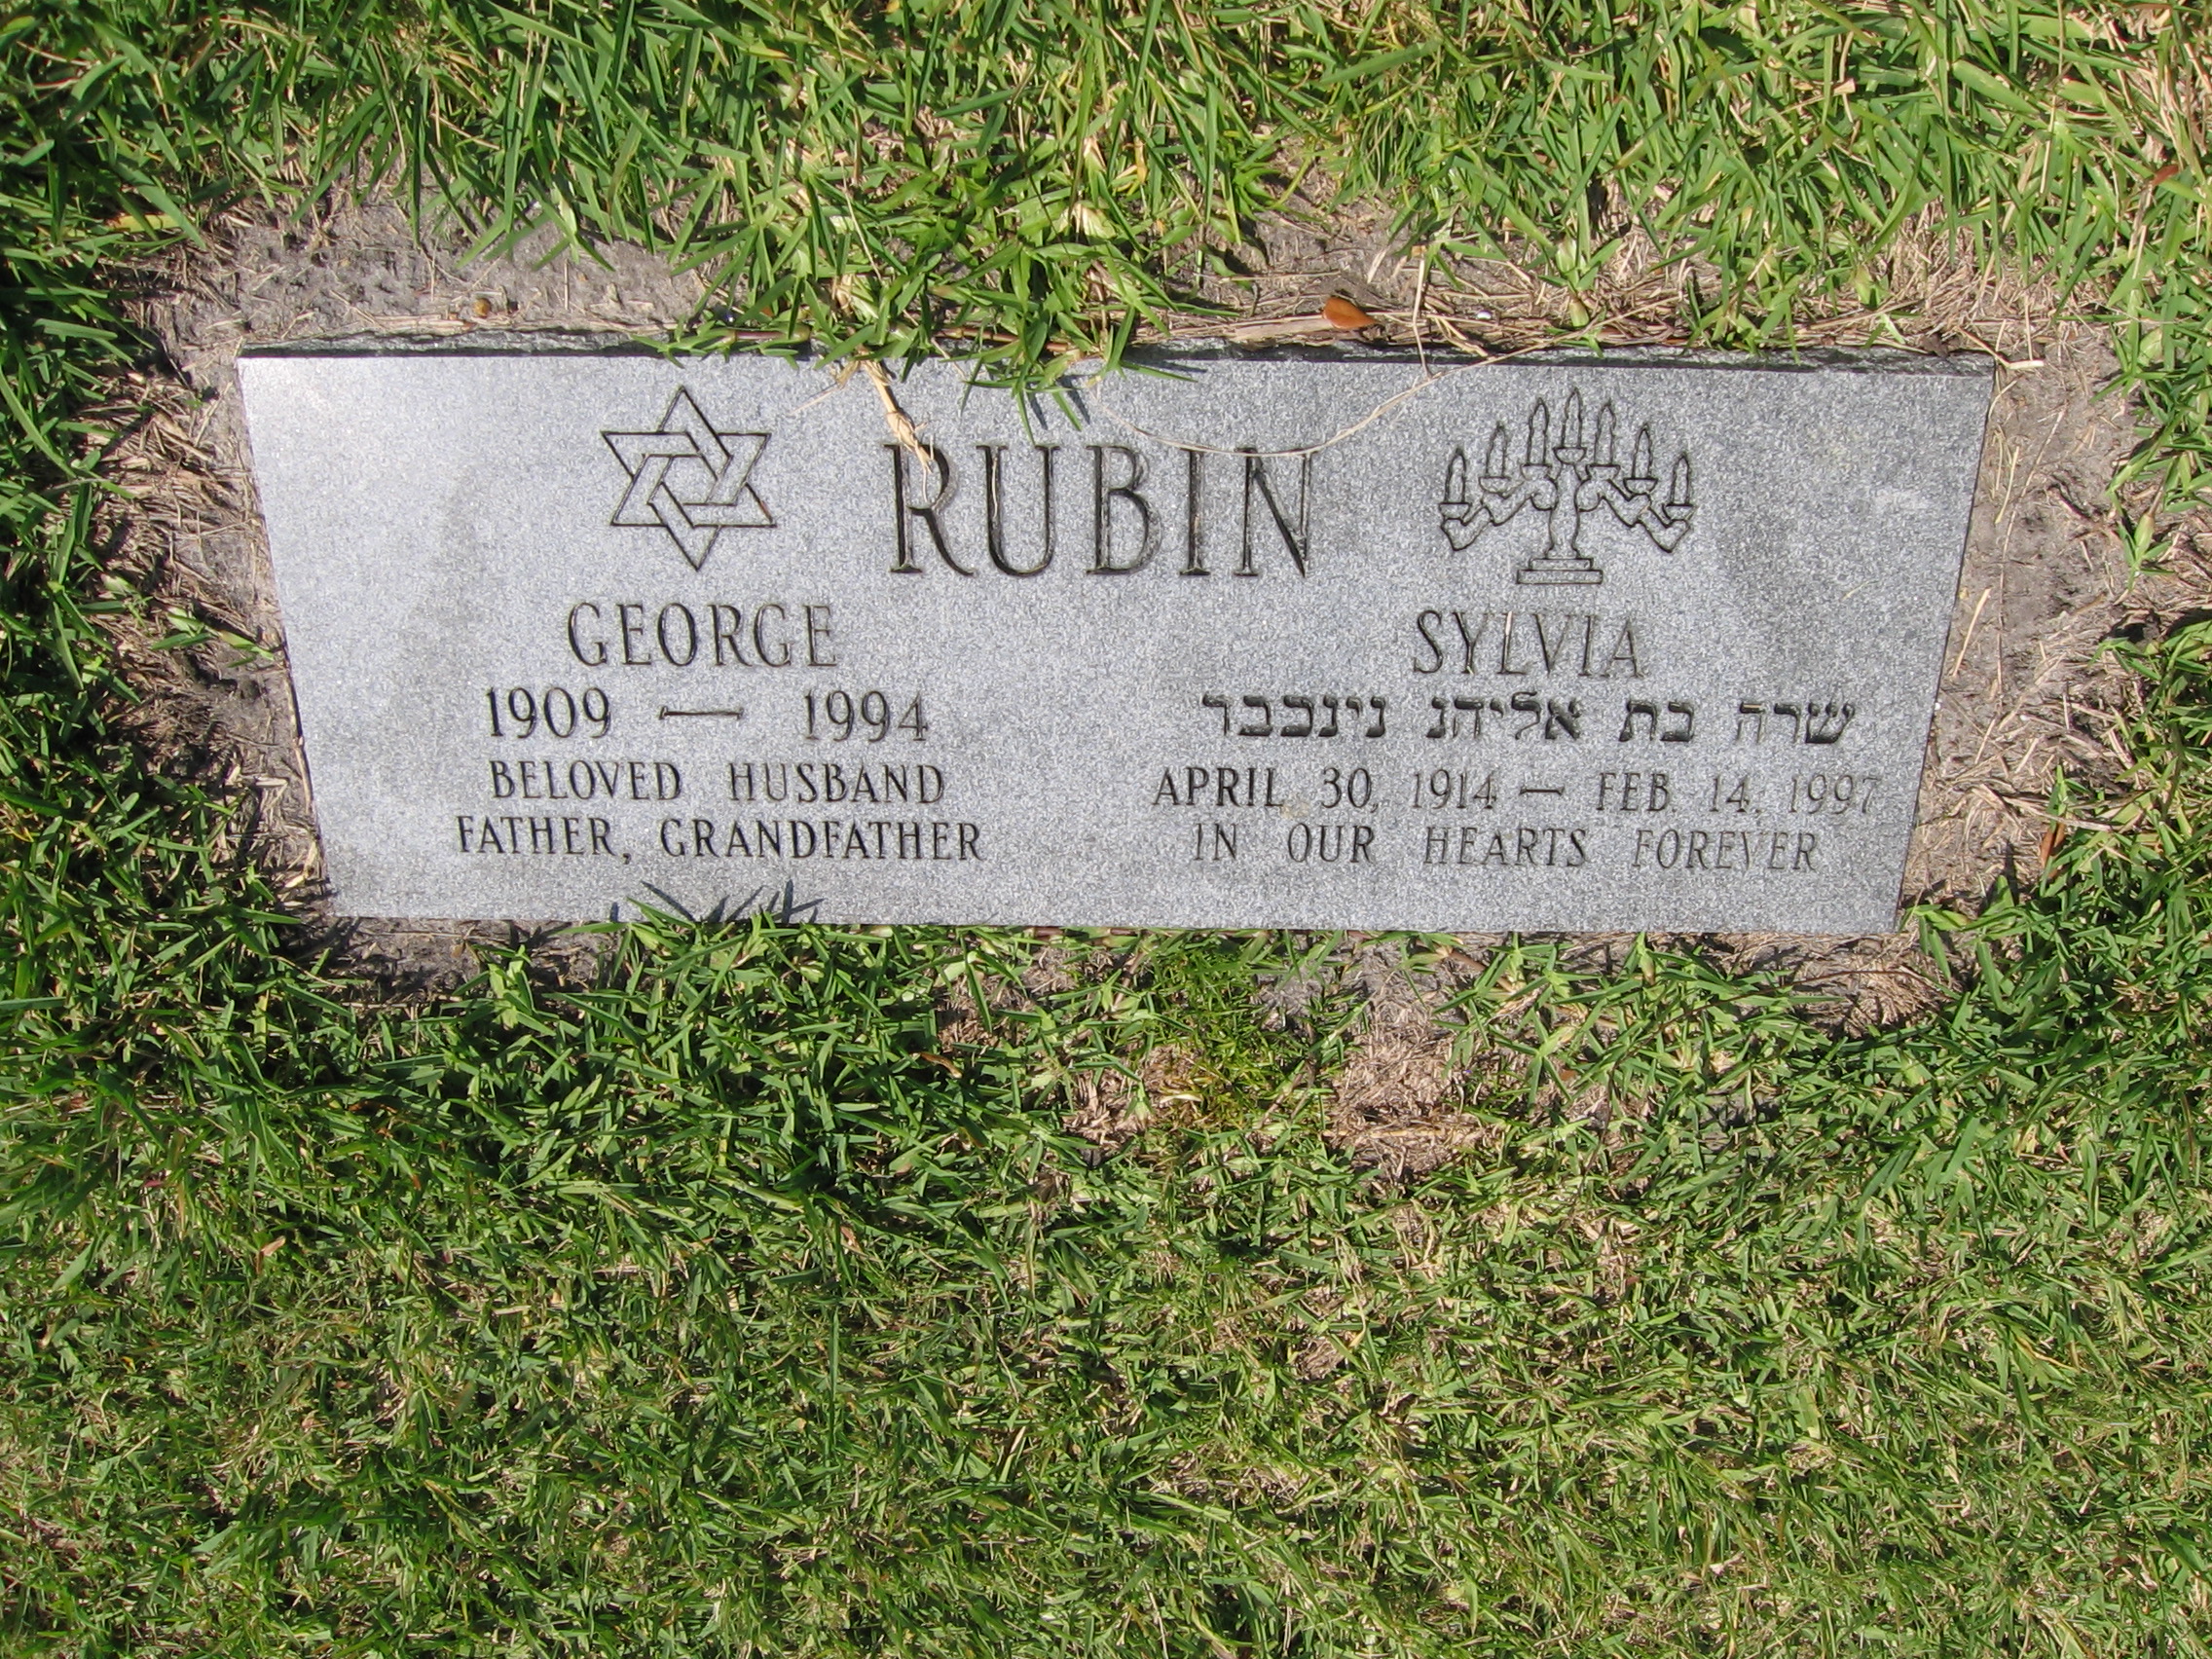 George Rubin